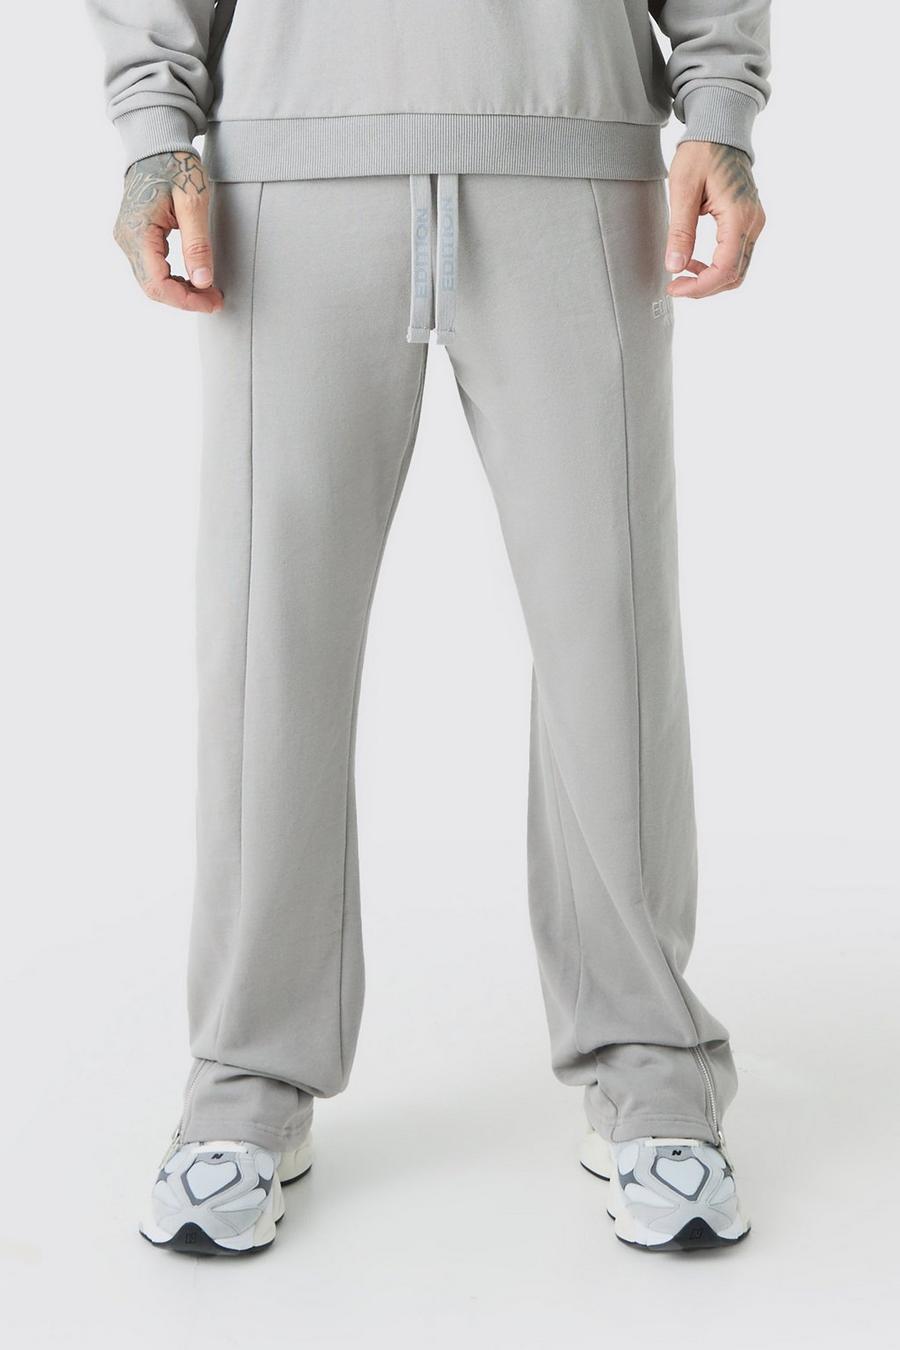 Pantaloni tuta Tall rilassati pesanti EDITION con spacco sul fondo, Grey